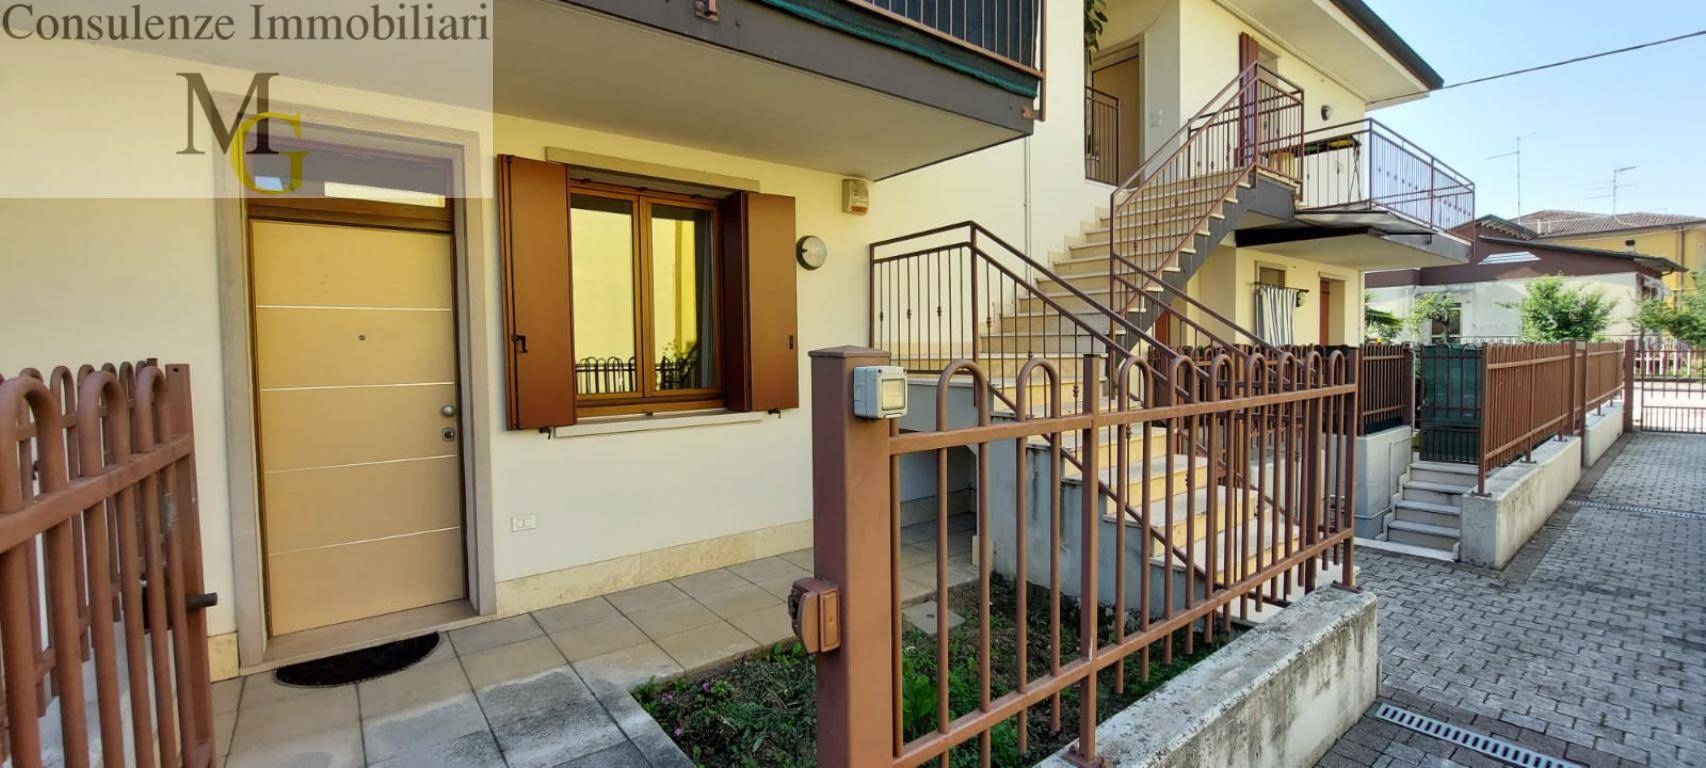 Appartamento in vendita a San Bonifacio, 3 locali, prezzo € 160.000 | CambioCasa.it